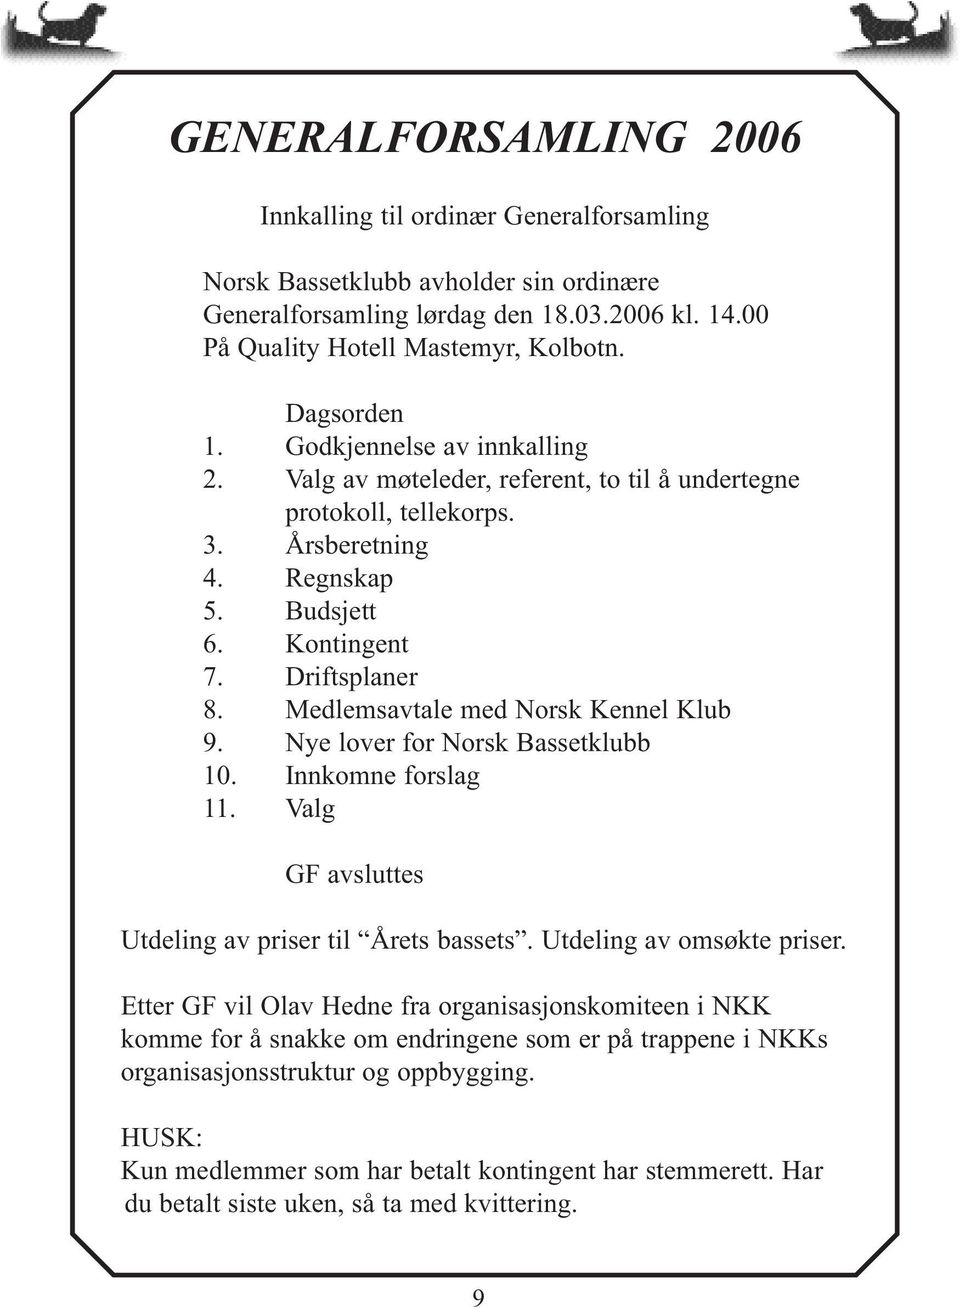 Medlemsavtale med Norsk Kennel Klub 9. Nye lover for Norsk Bassetklubb 10. Innkomne forslag 11. Valg GF avsluttes Utdeling av priser til Årets bassets. Utdeling av omsøkte priser.